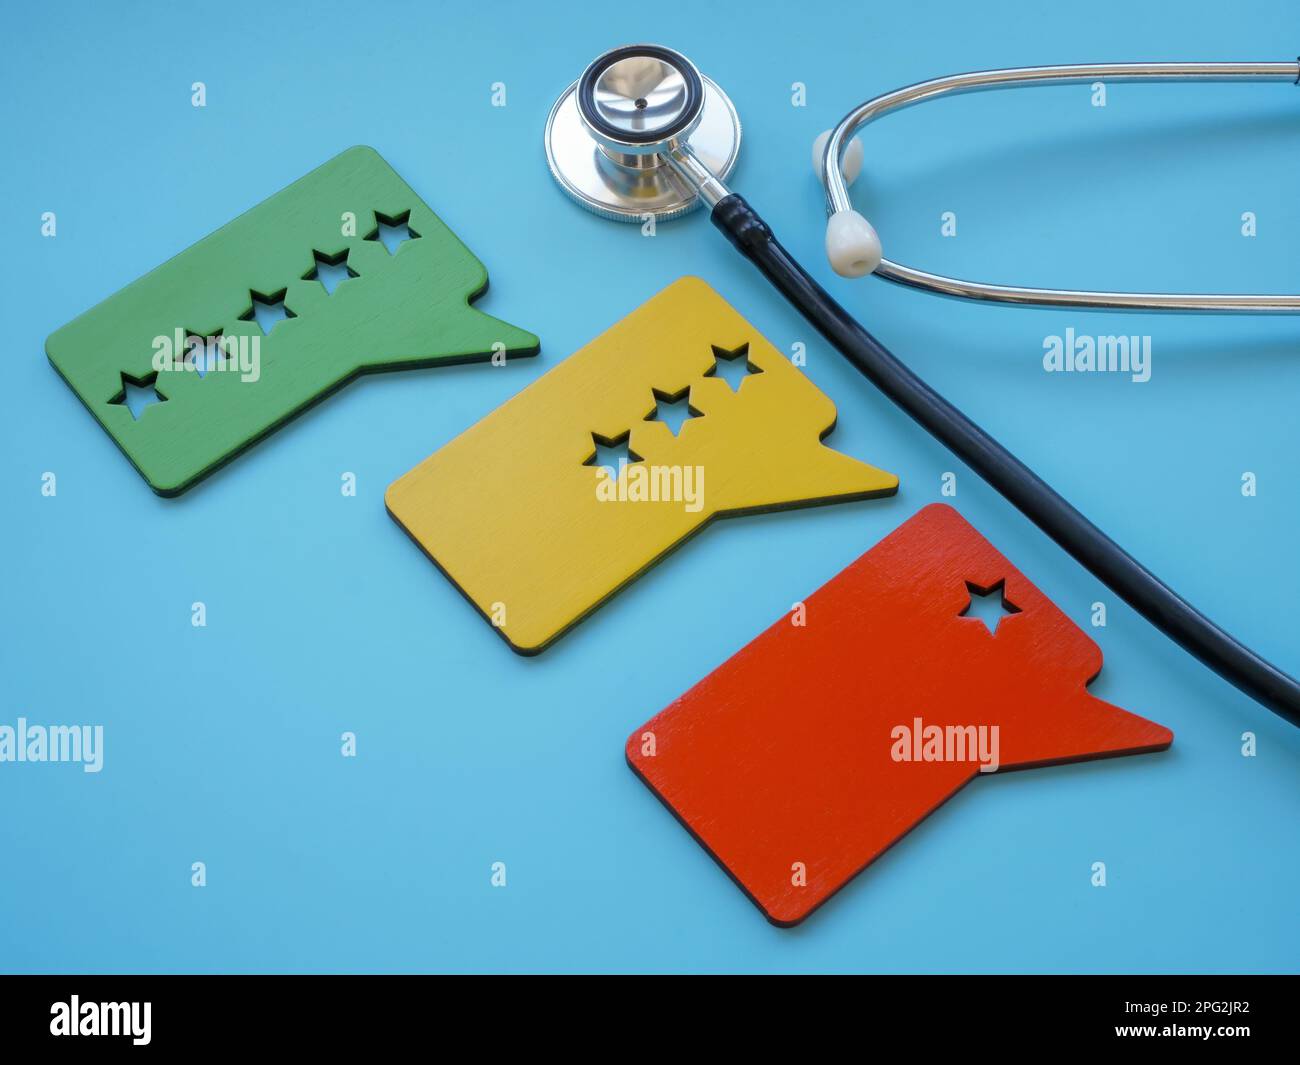 Stethoskop und mit Sternen versehene Platten als Symbol für die Beurteilung des Patientenerlebnisses. Stockfoto